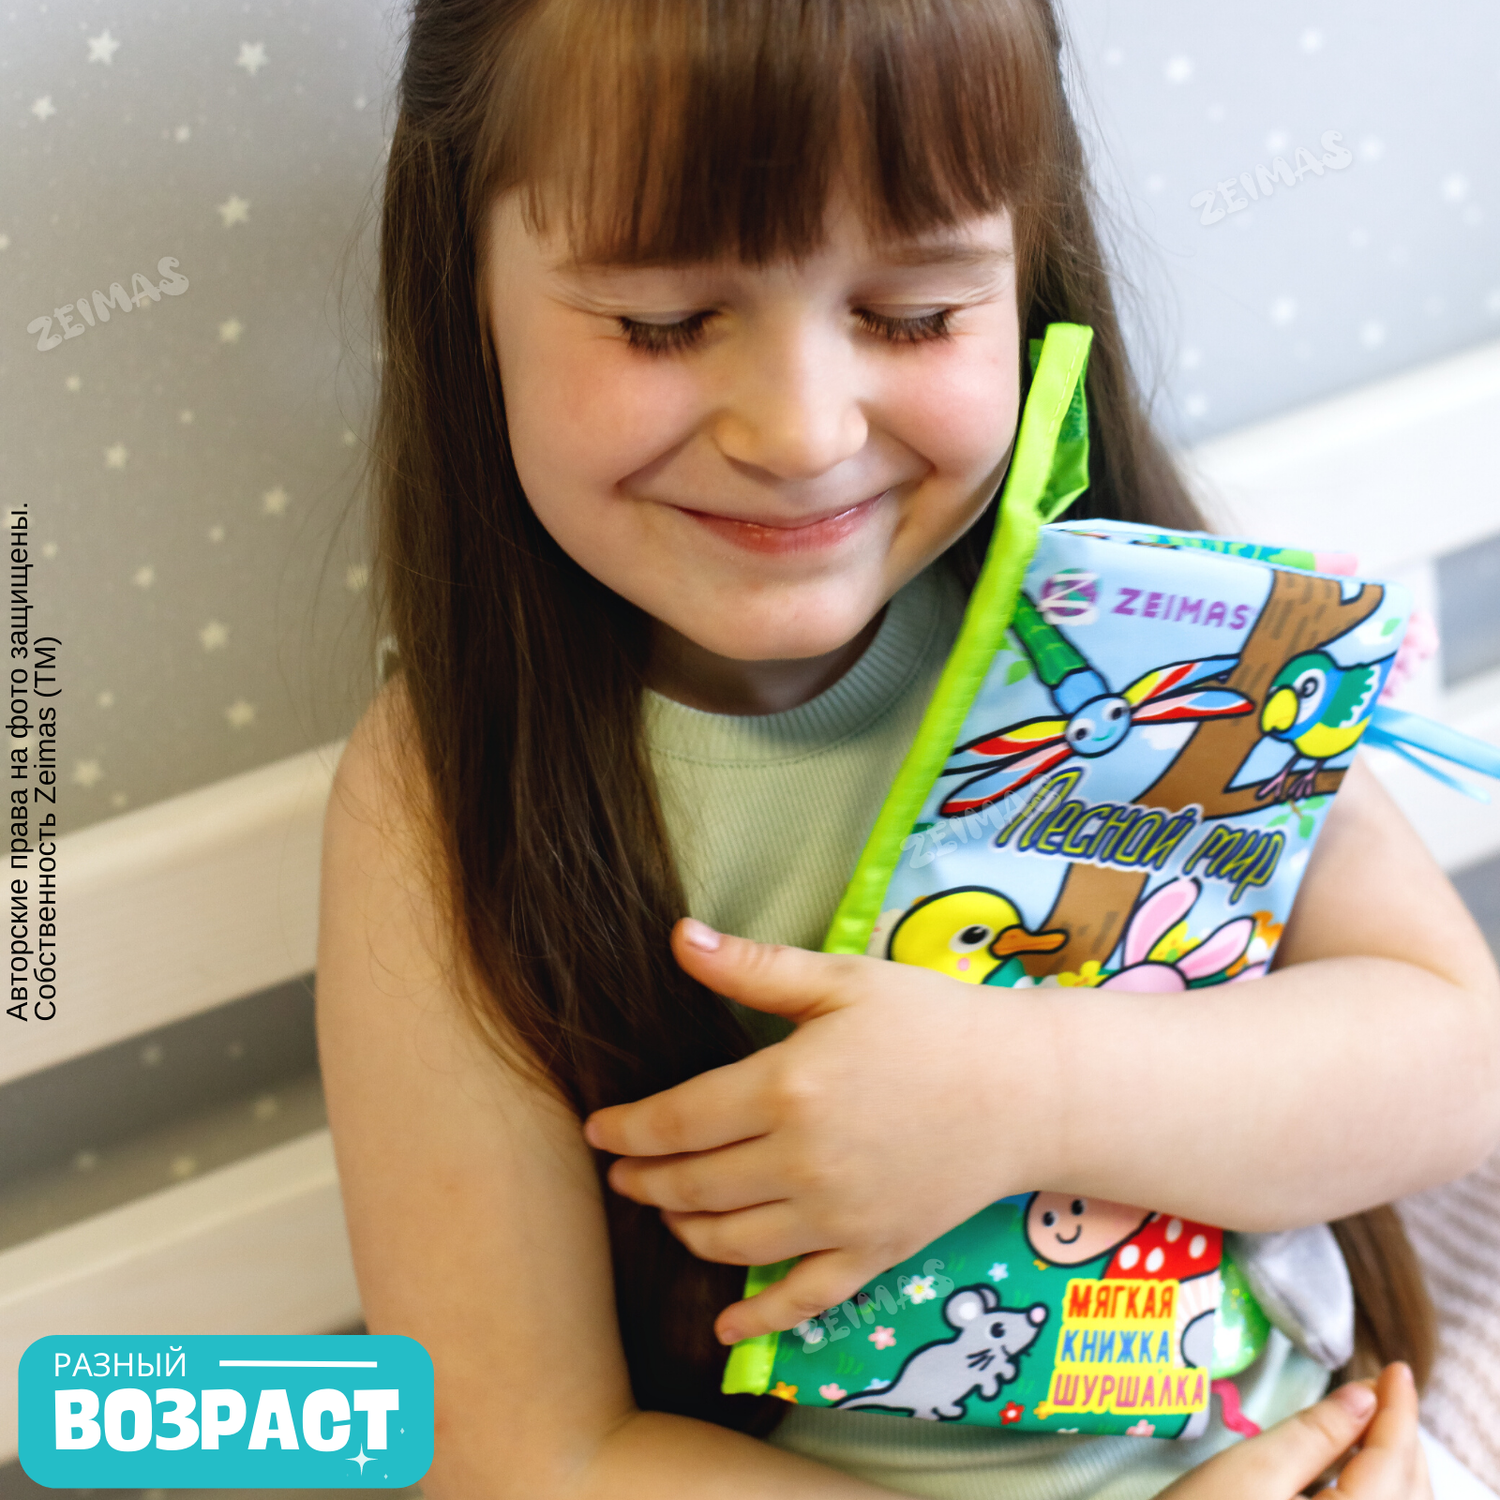 Книжка шуршалка детская Zeimas Лесной мир с хвостиками игрушка подвесная на кроватку - фото 12